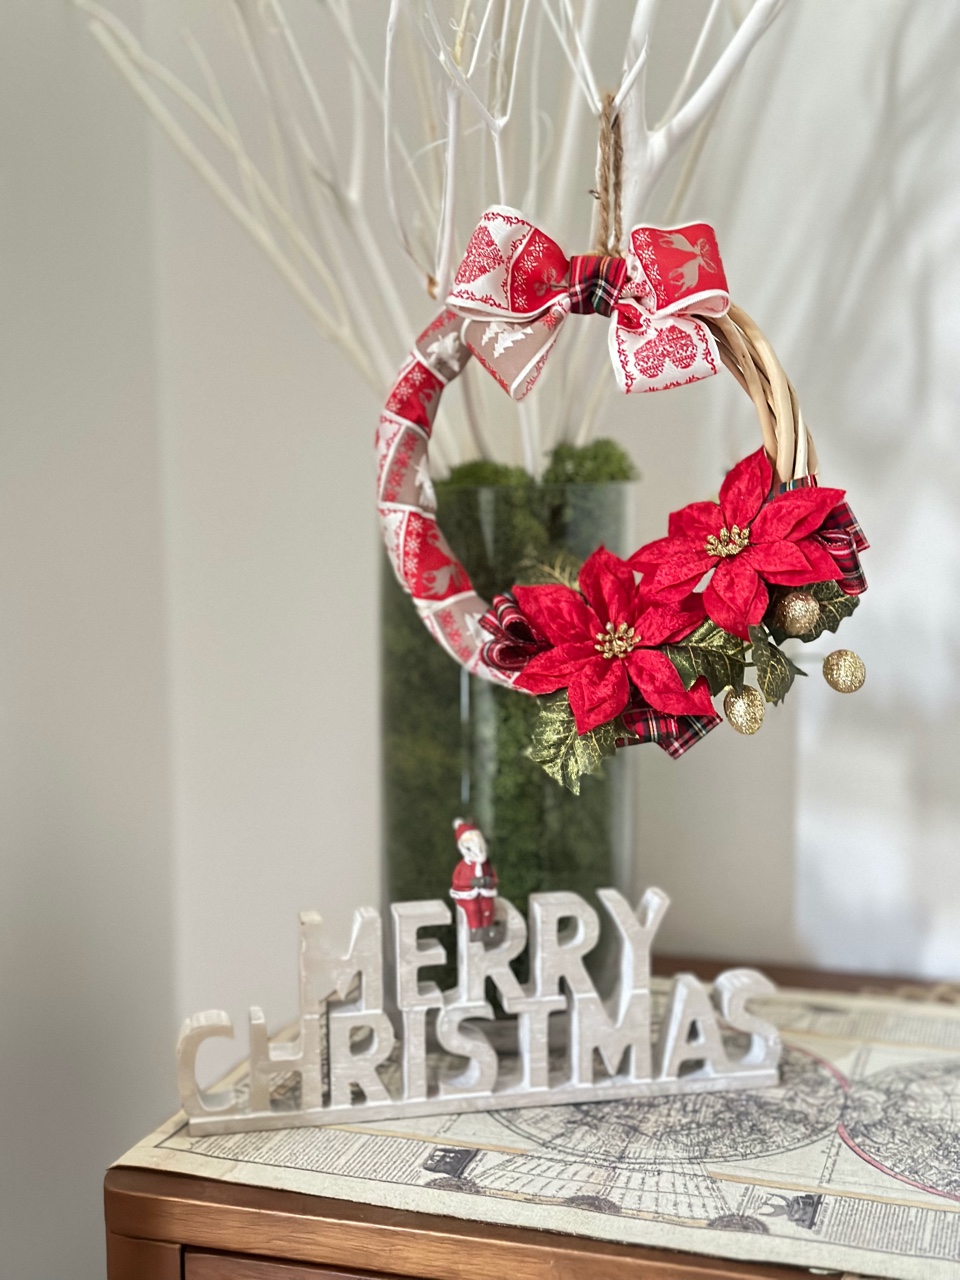 ポインセチアを使用したクリスマスリース。台の上の花瓶に生けた白い枝にリースをかけた、クリスマスディスプレイのイメージ。